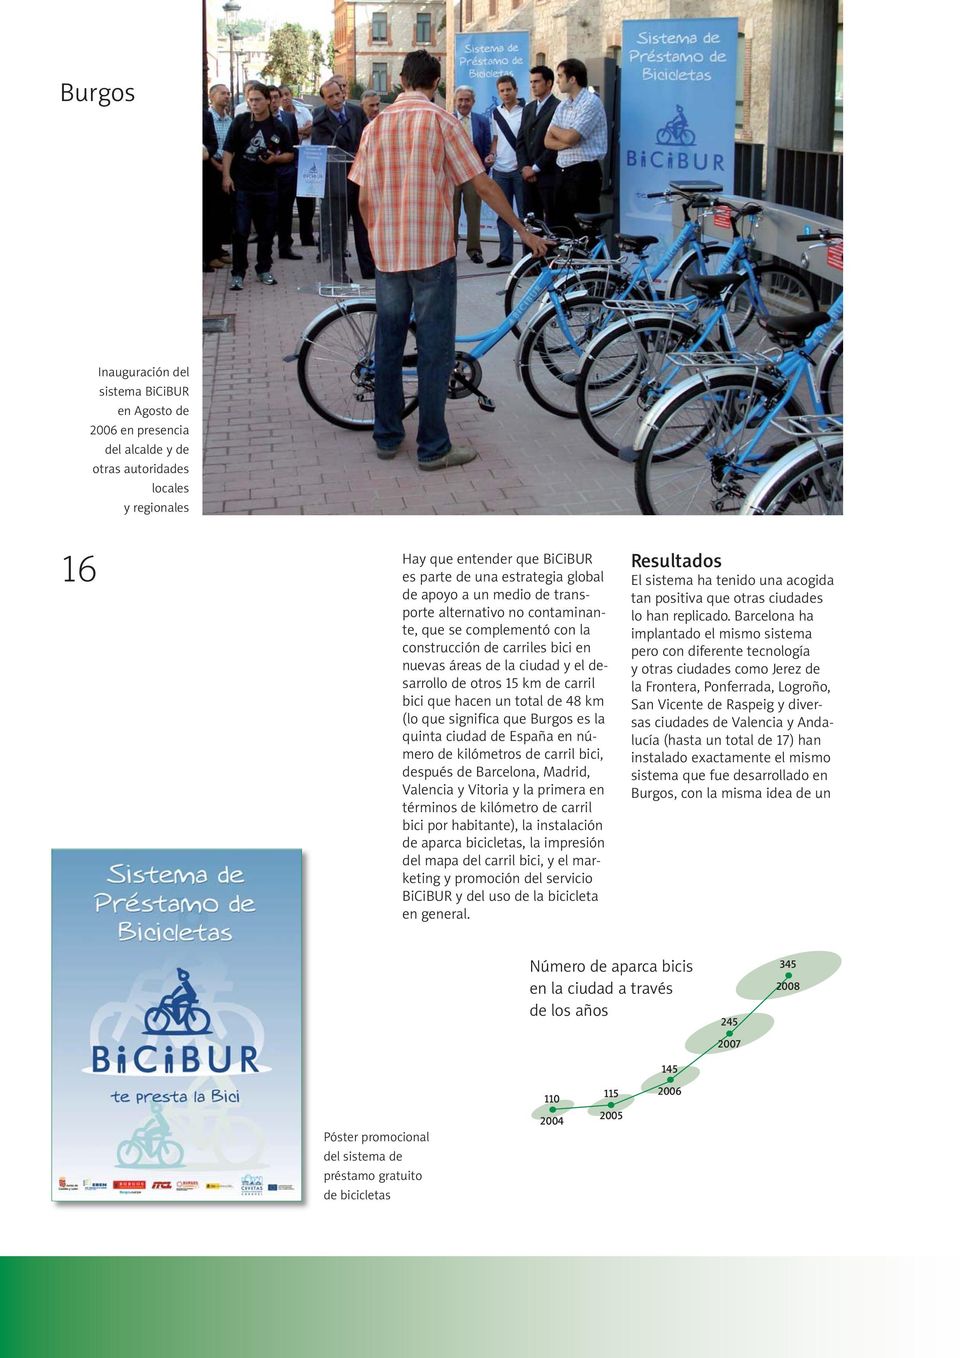 bici que hacen un total de 48 km (lo que significa que Burgos es la quinta ciudad de España en número de kilómetros de carril bici, después de Barcelona, Madrid, Valencia y Vitoria y la primera en